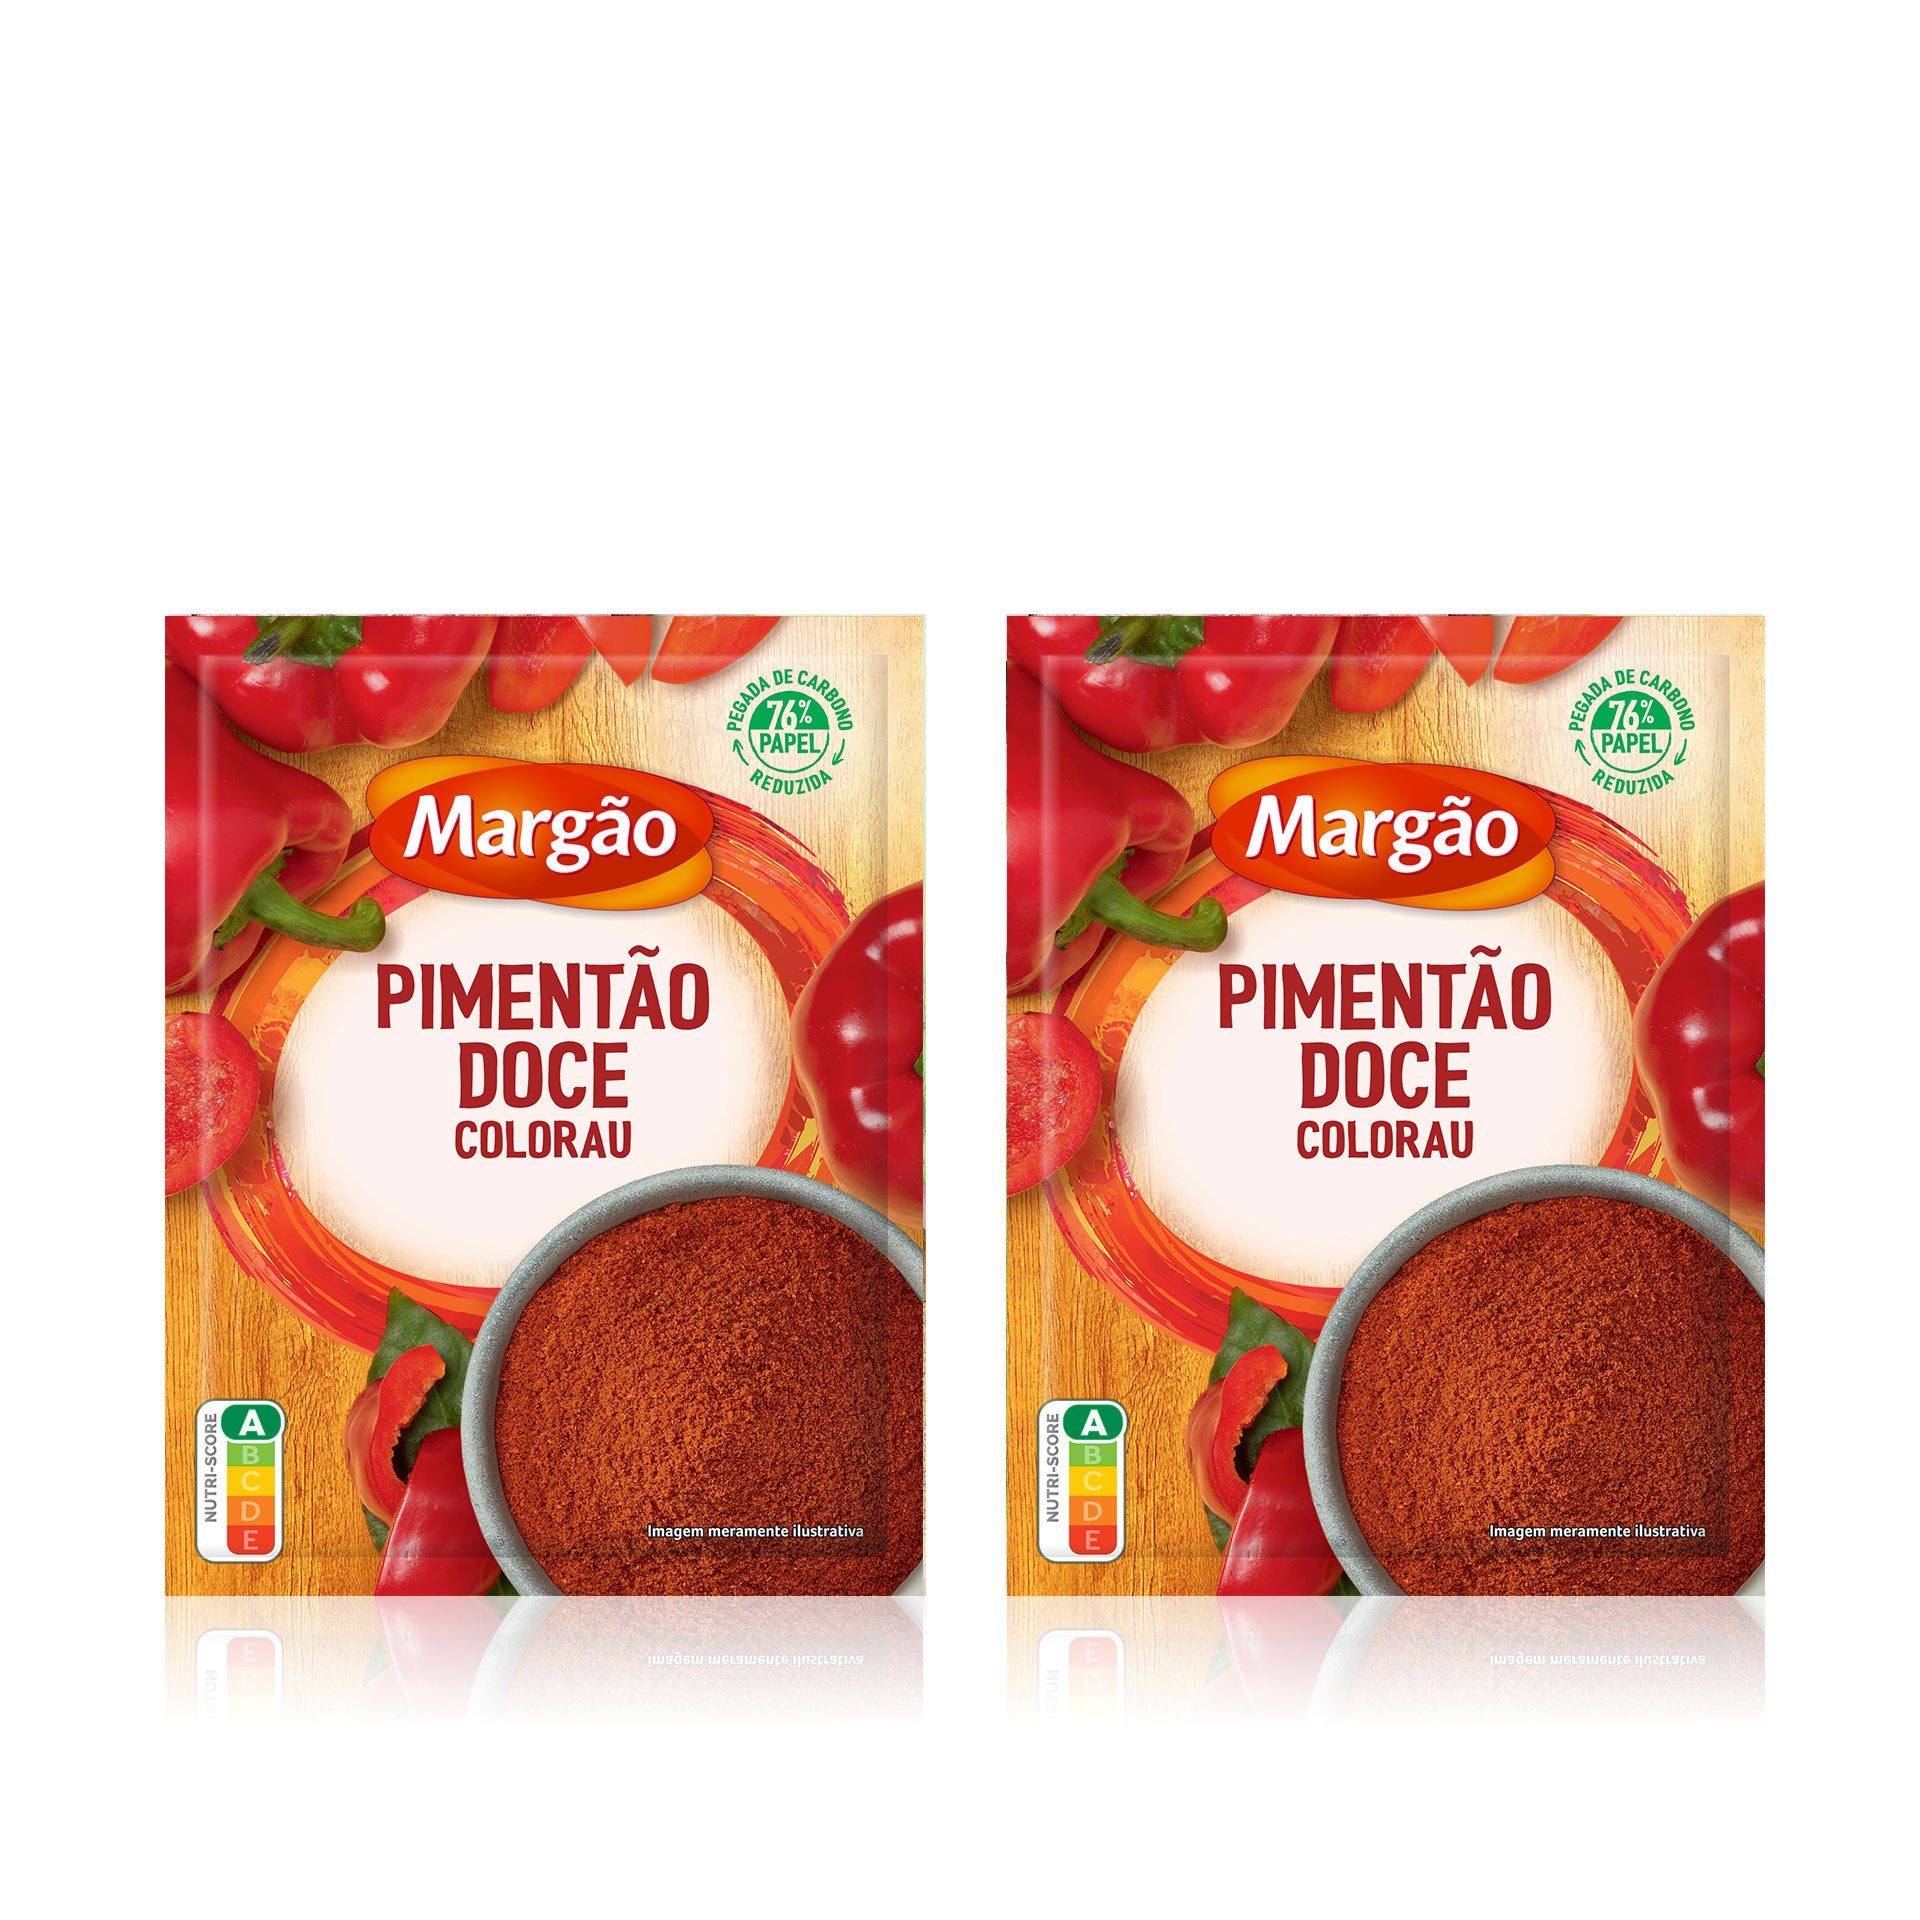 Margão Pimentão Doce Saqueta 35 gr - Pack 2 x 35 gr